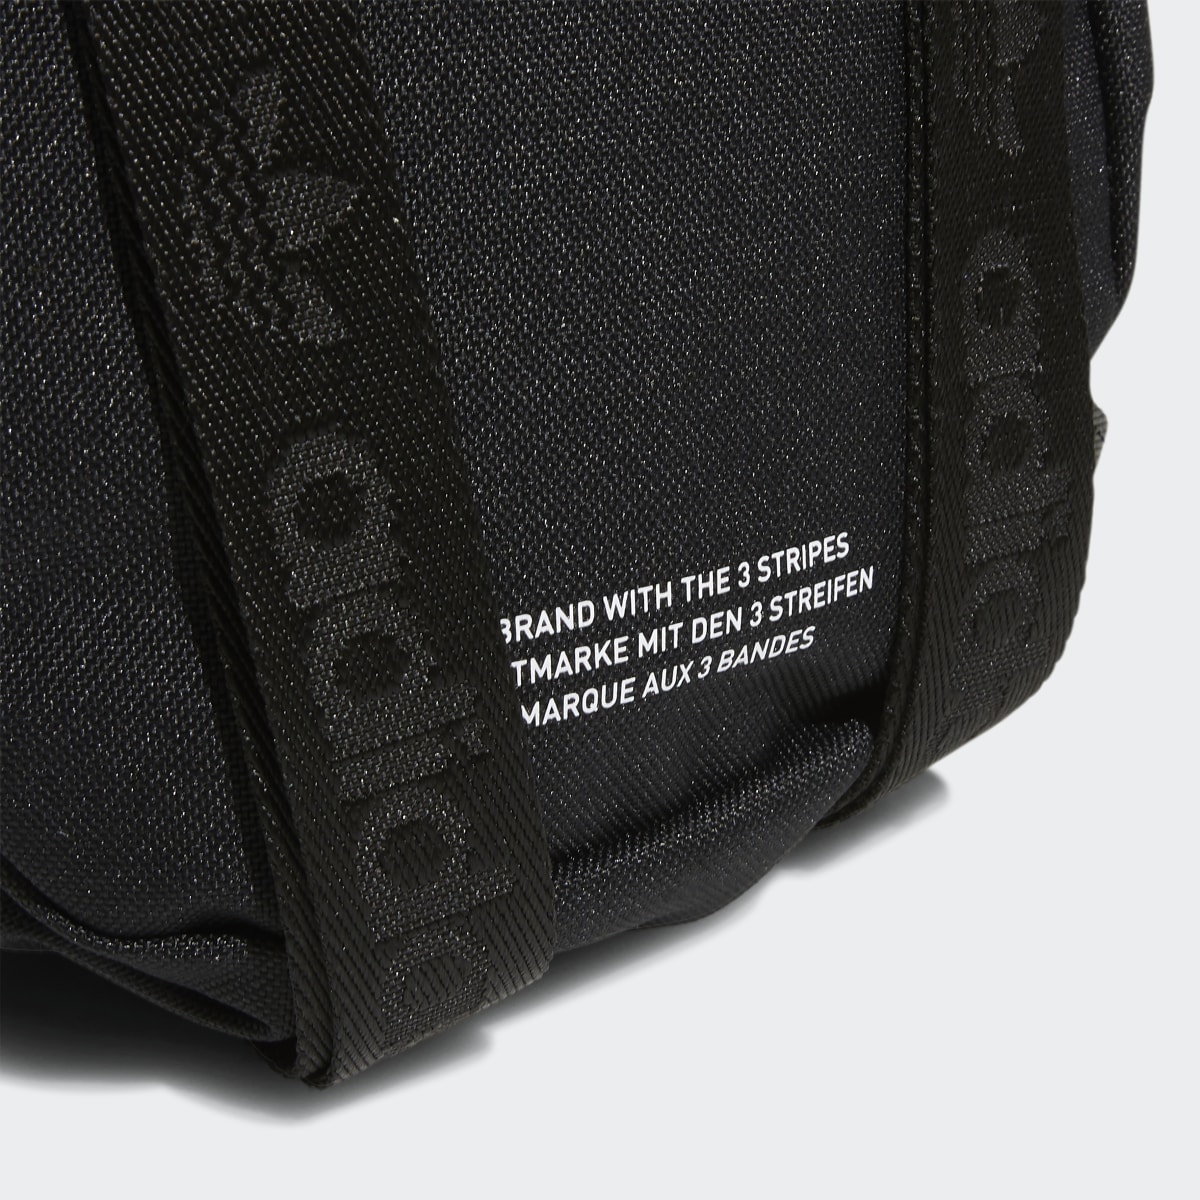 Adidas Trefoil 2.0 Mini Backpack. 7